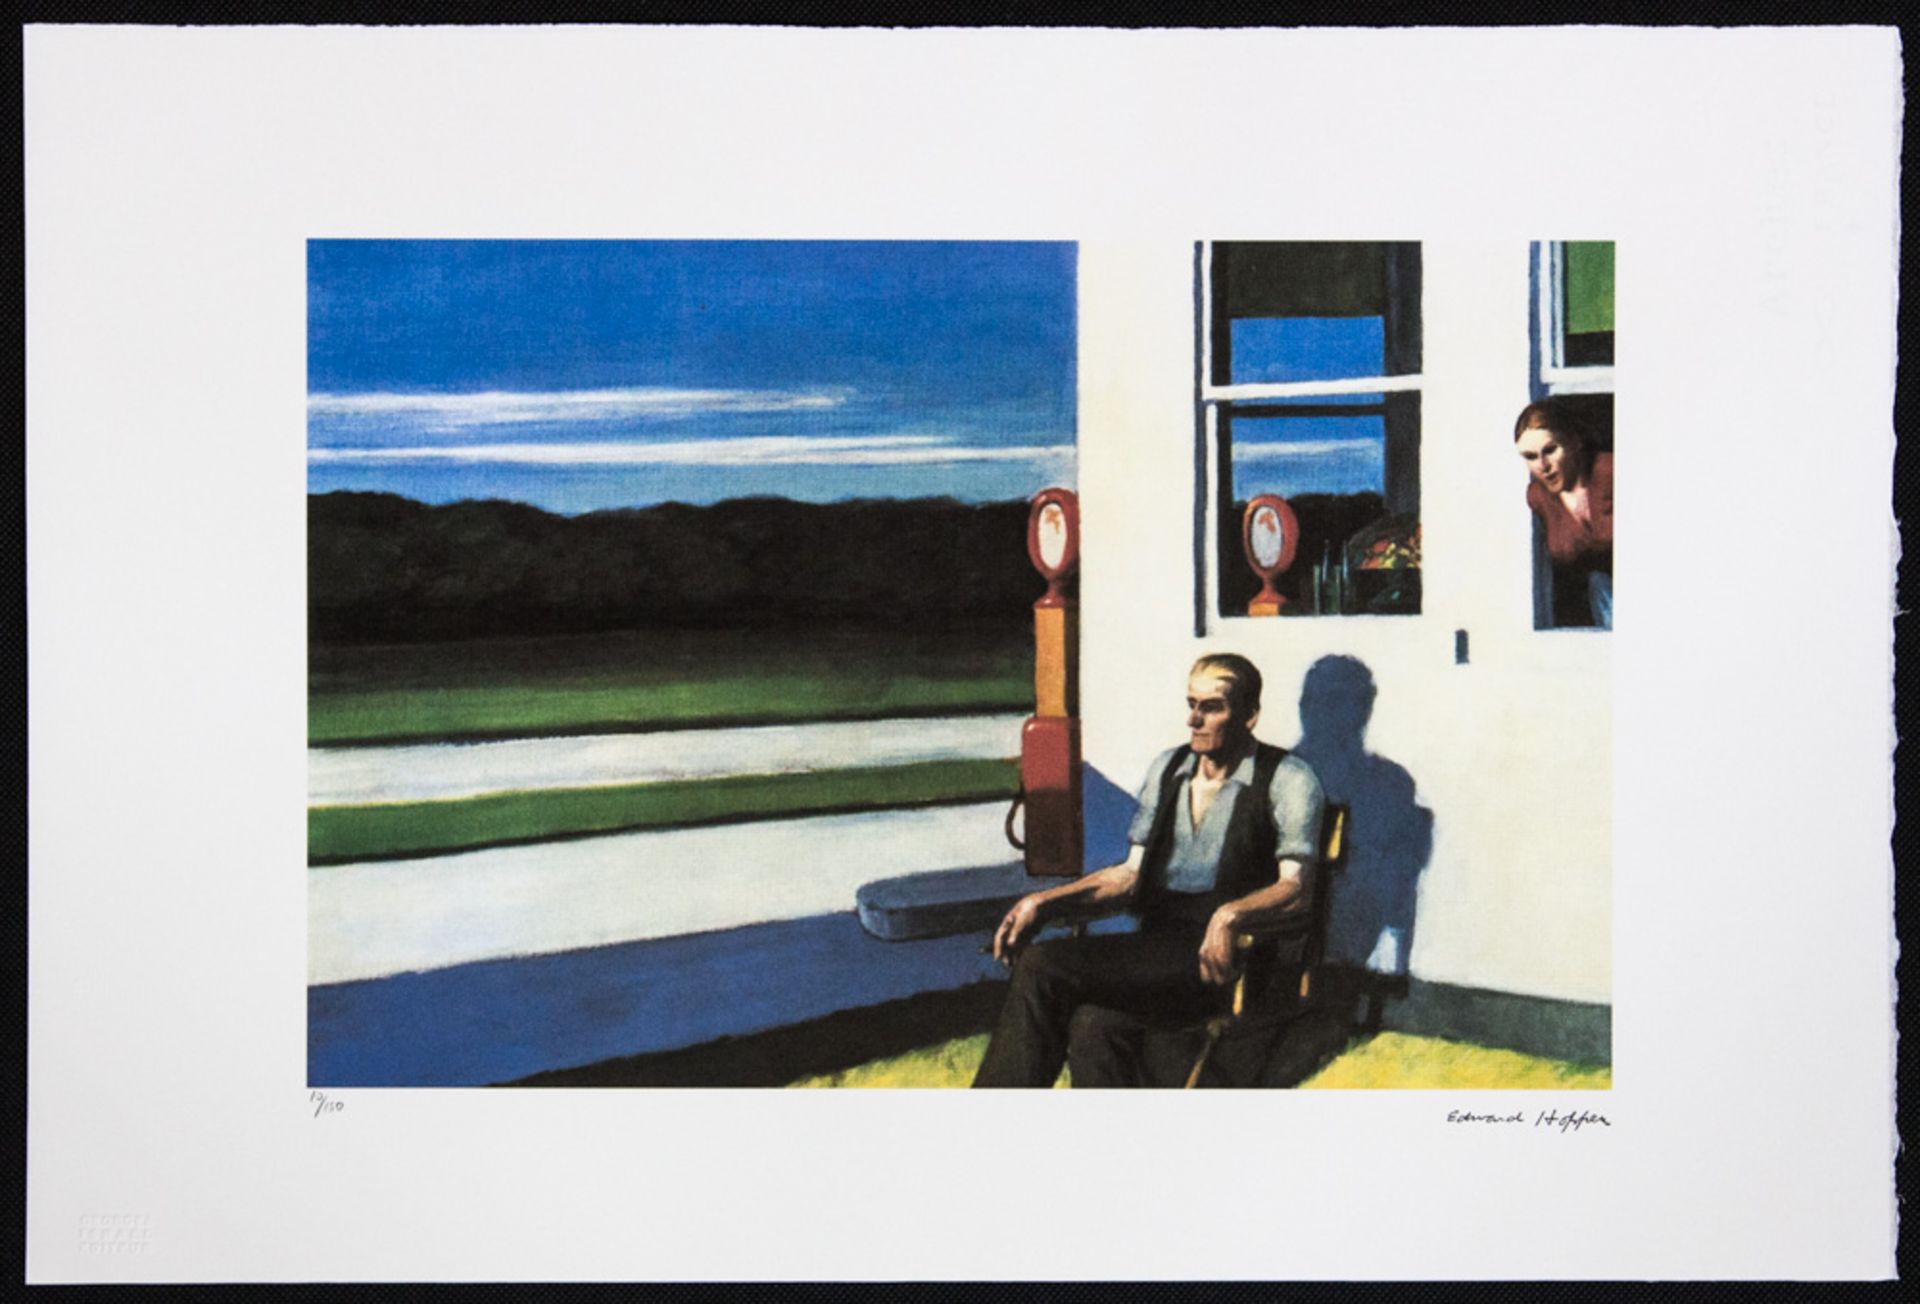 Edward Hopper 'Four Lane Road' - Image 2 of 5